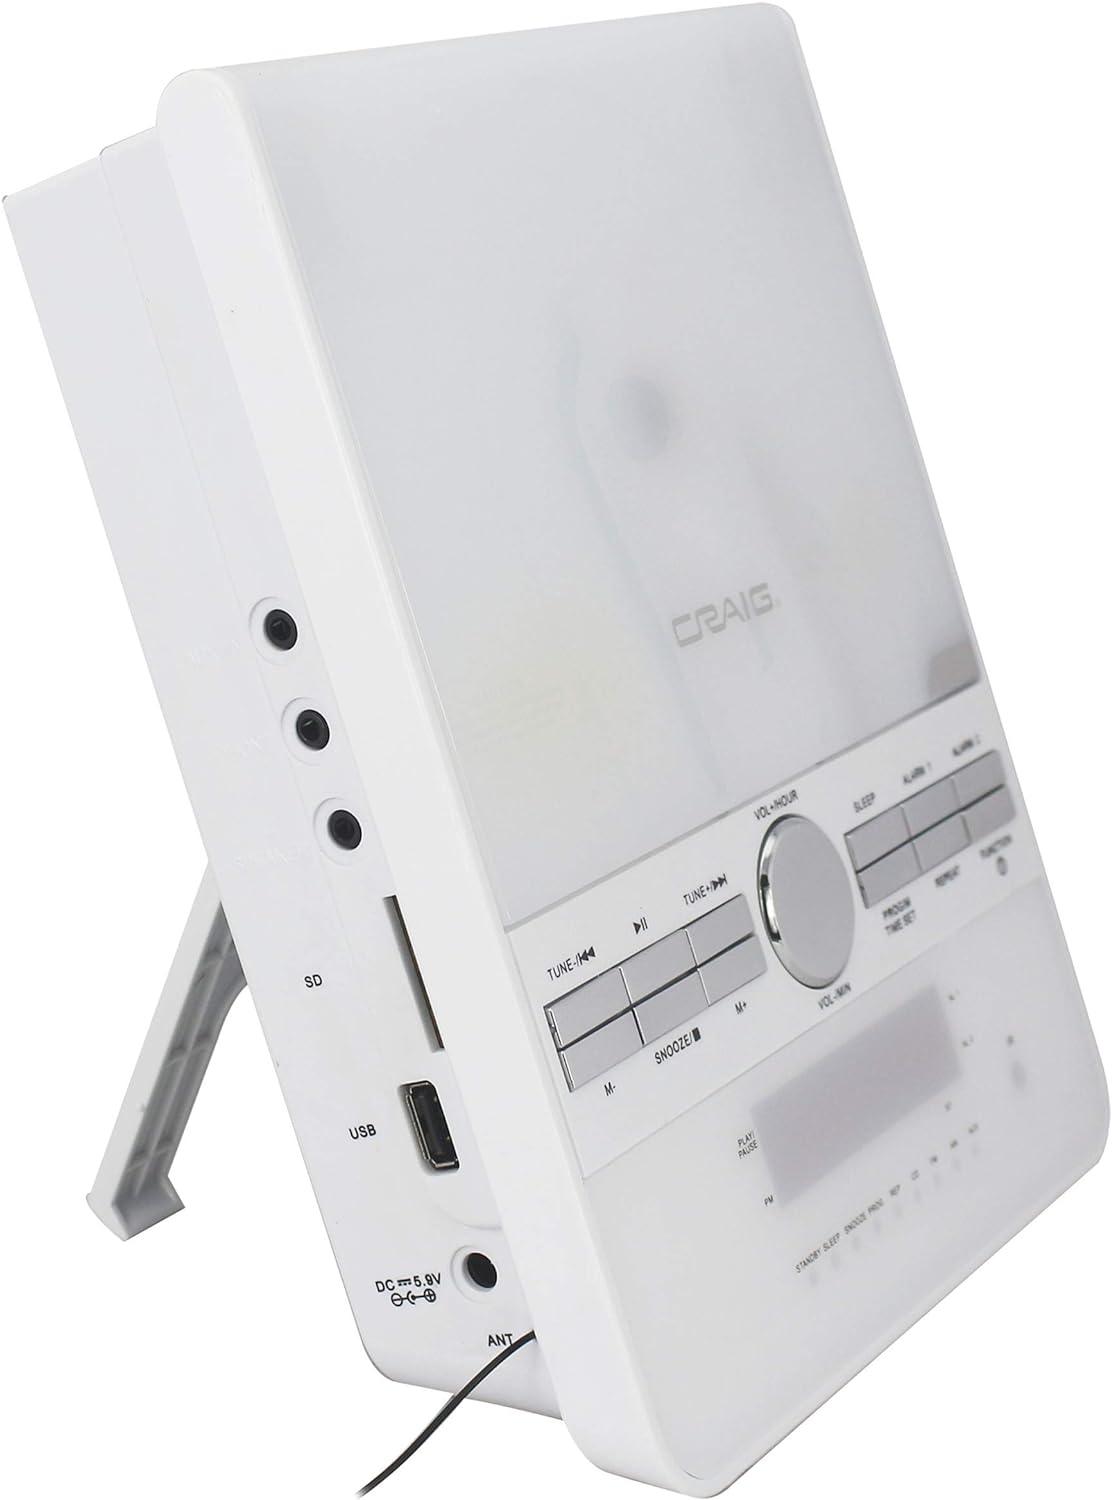 CM427BT-WH Sistema de estante estéreo de CD vertical de 3 piezas con radio - VIRTUAL MUEBLES